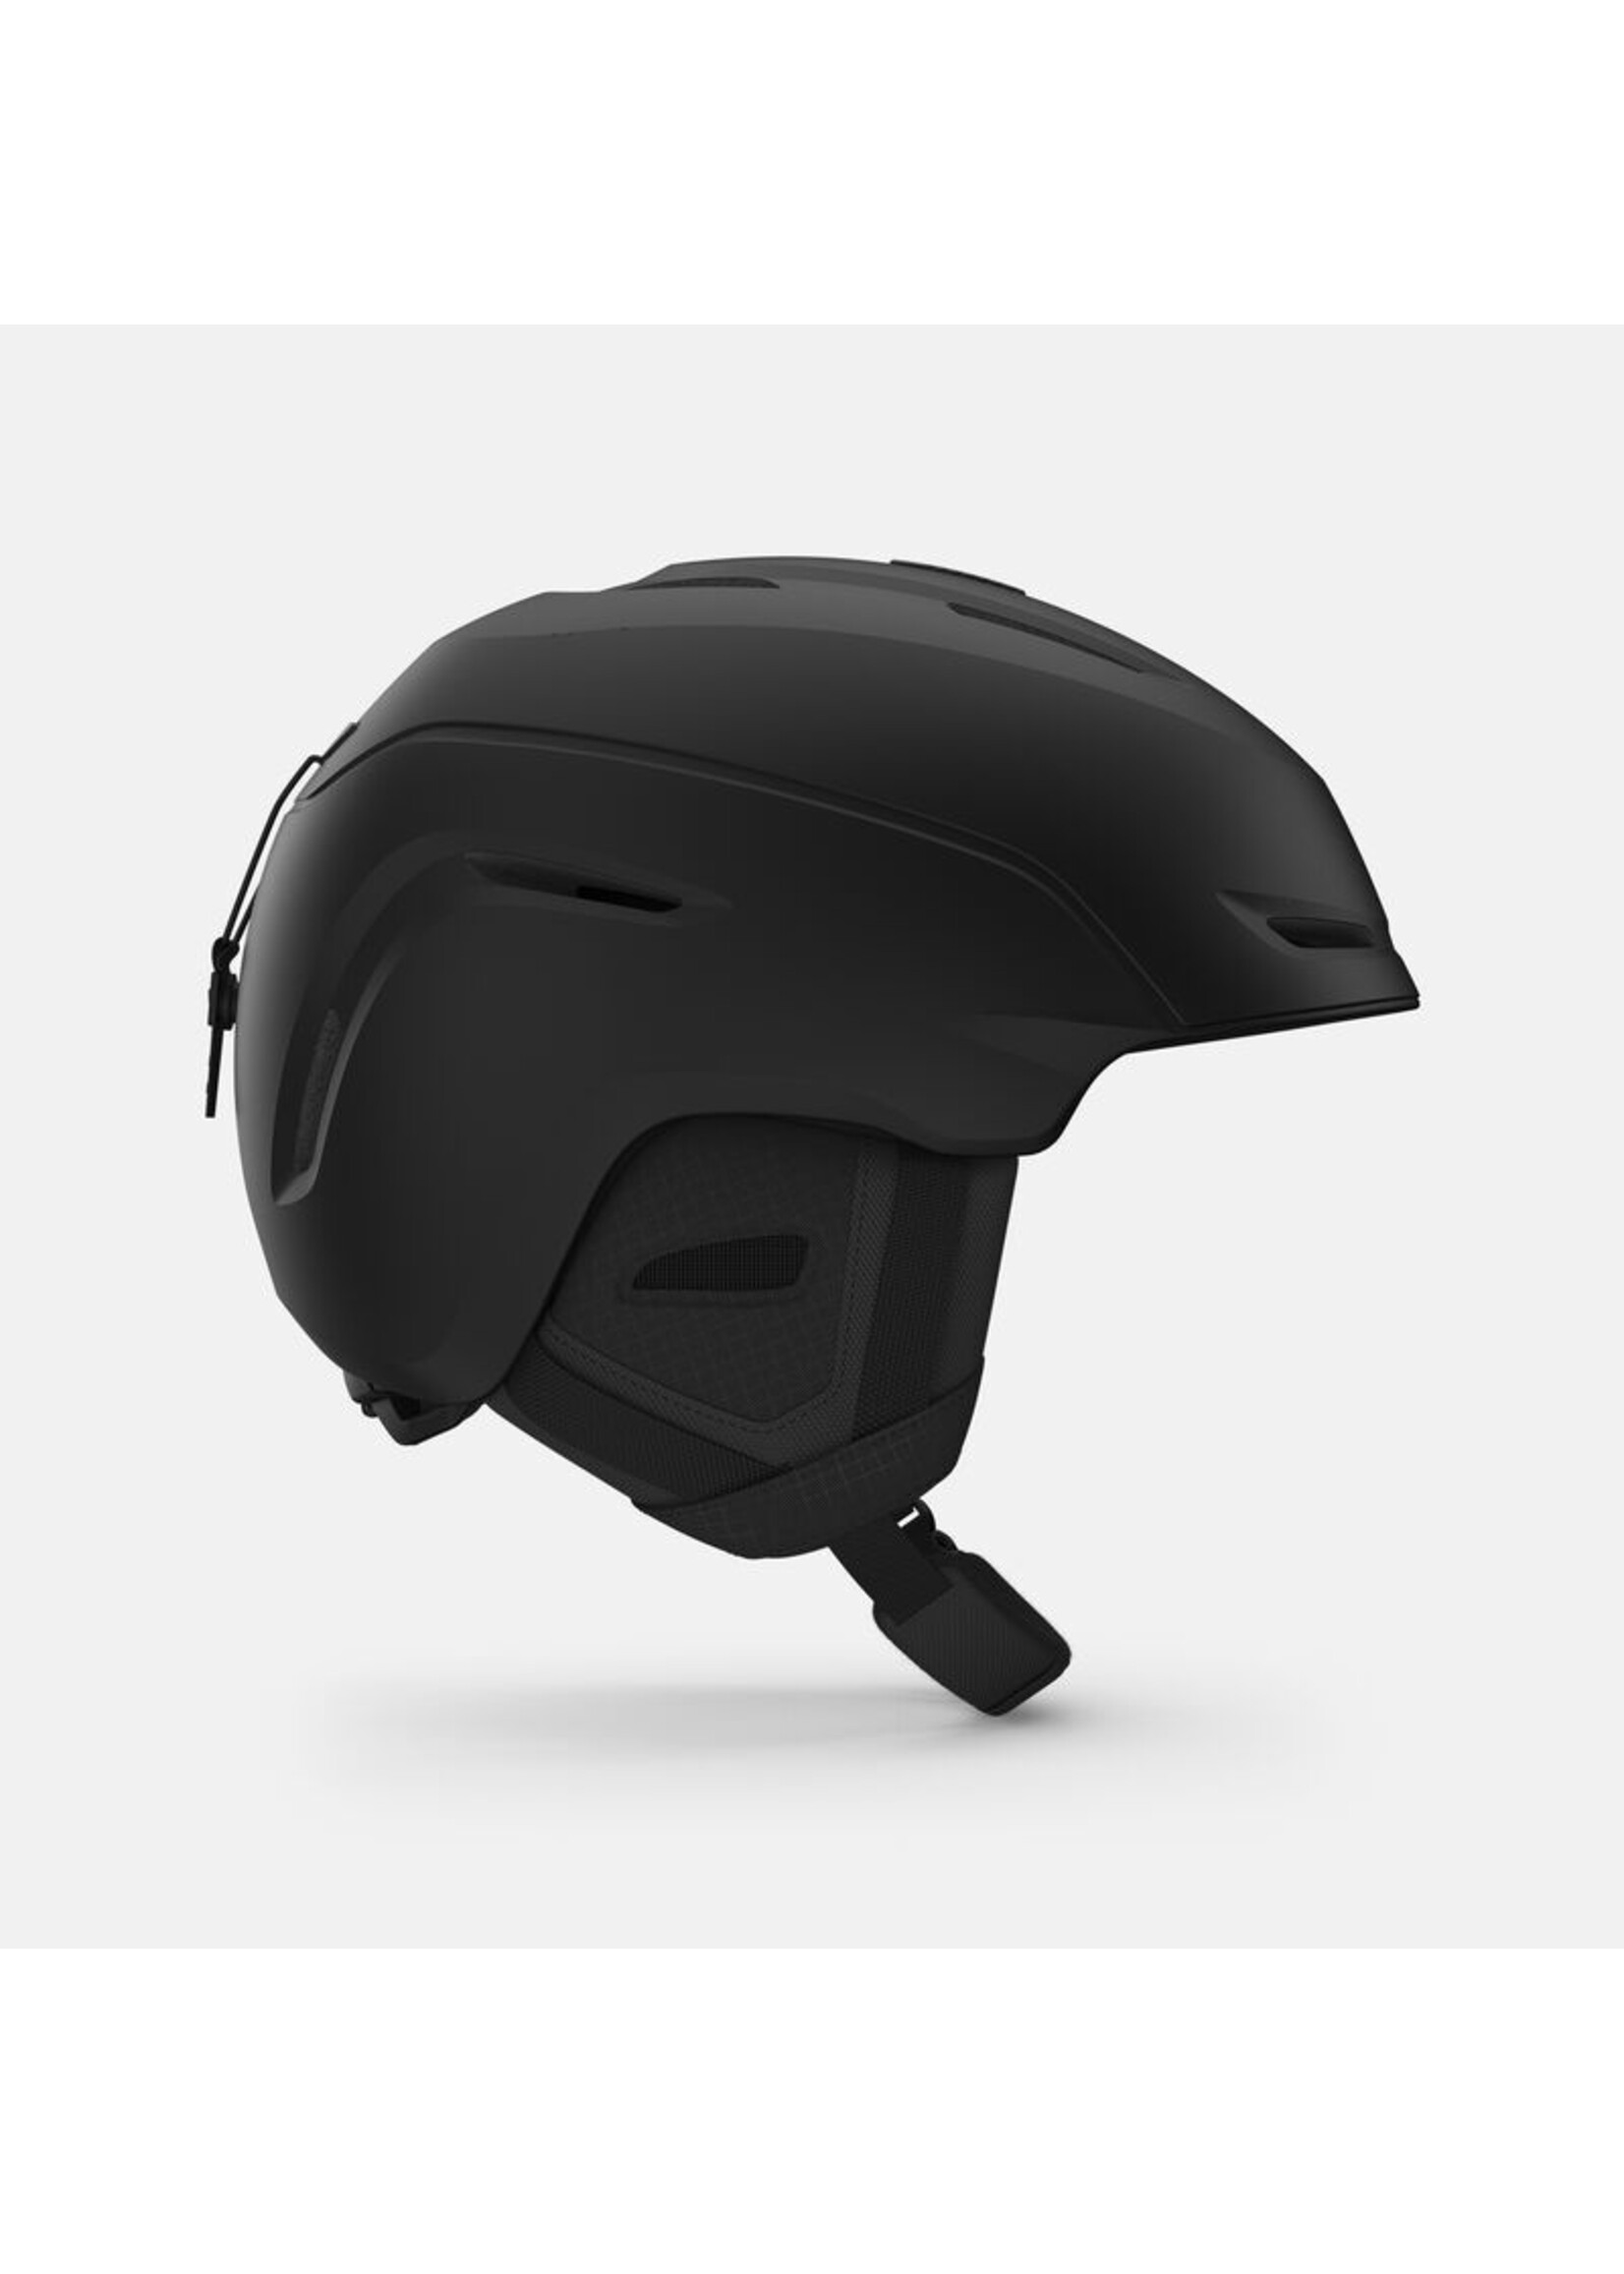 Giro GIRO NEO MIPS Helmet